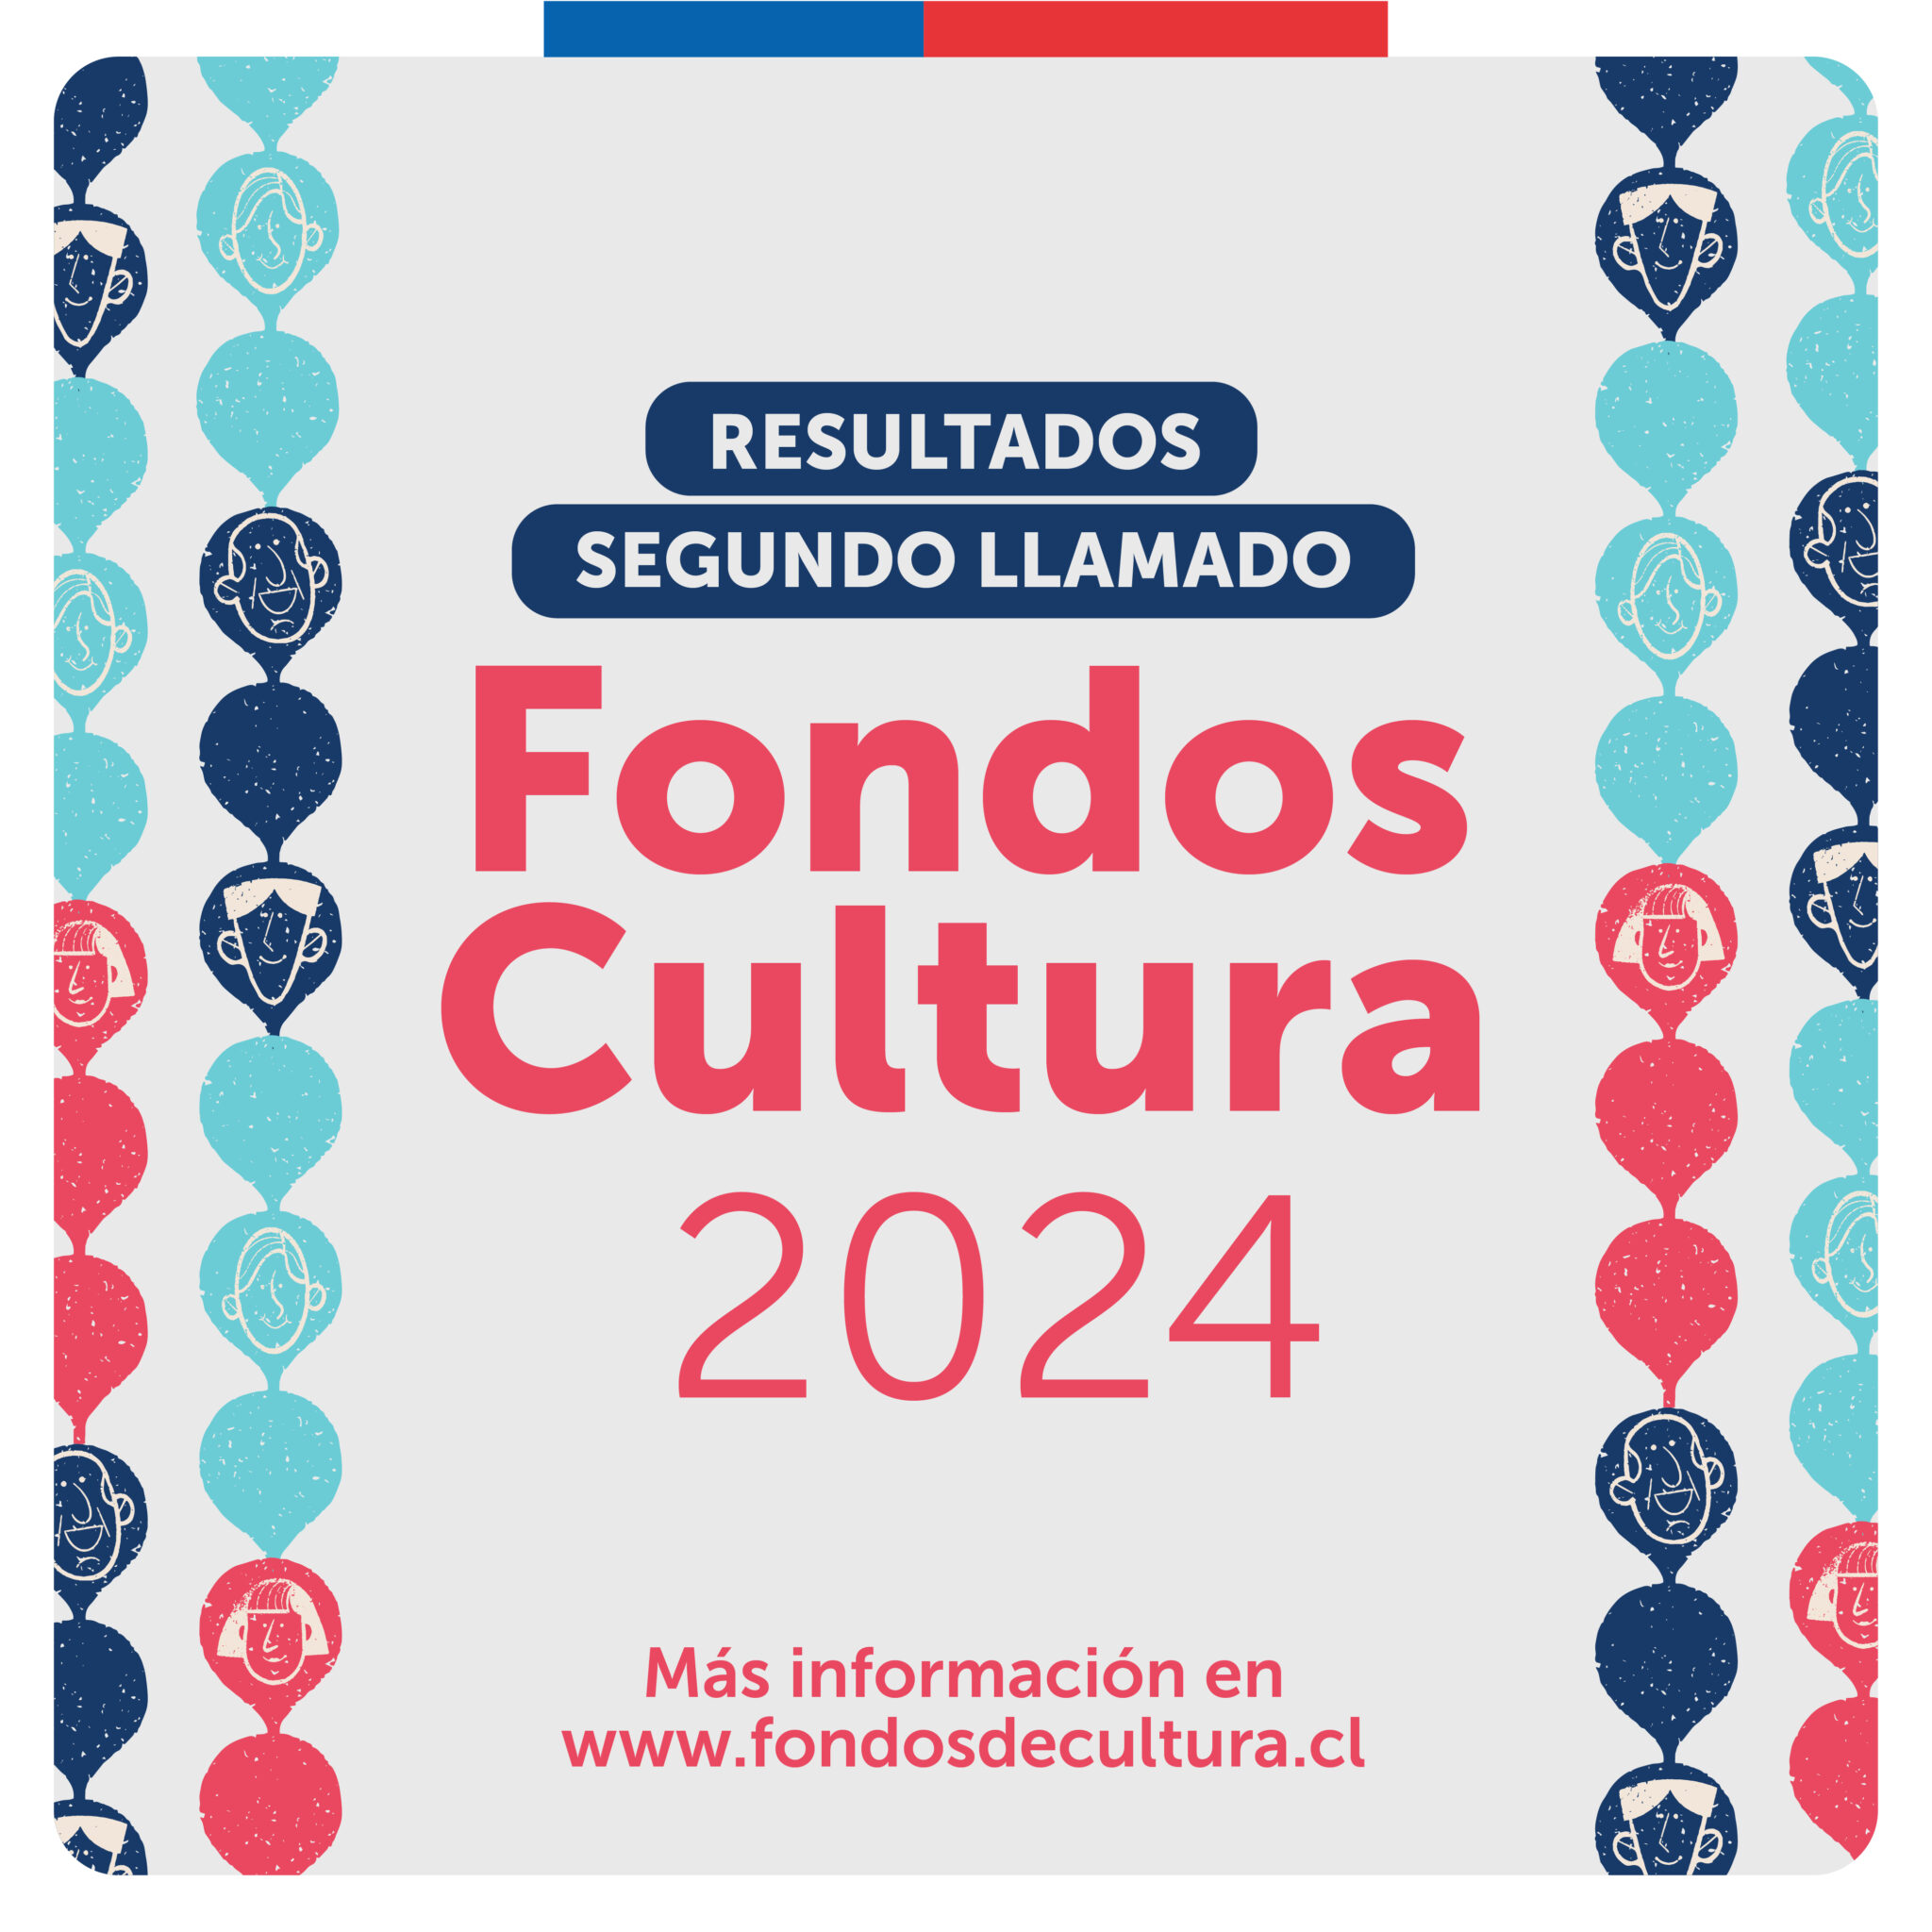 Fondos Cultura 2024 entregarán 604 millones de pesos a 47 proyectos